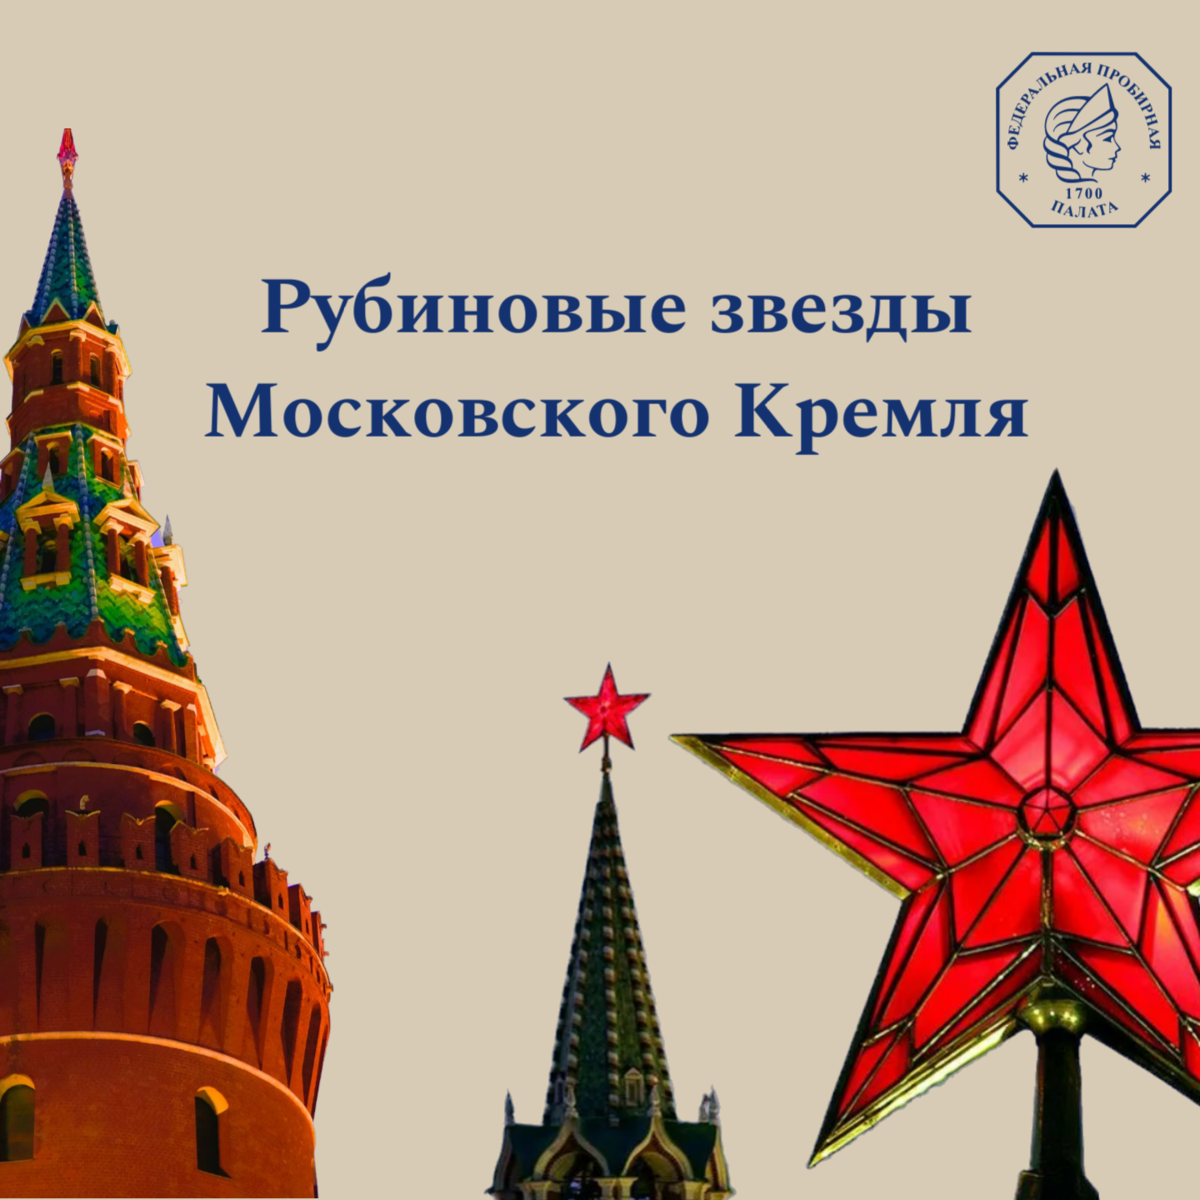 А вы знали как на башнях Кремля появились рубиновые звезды?